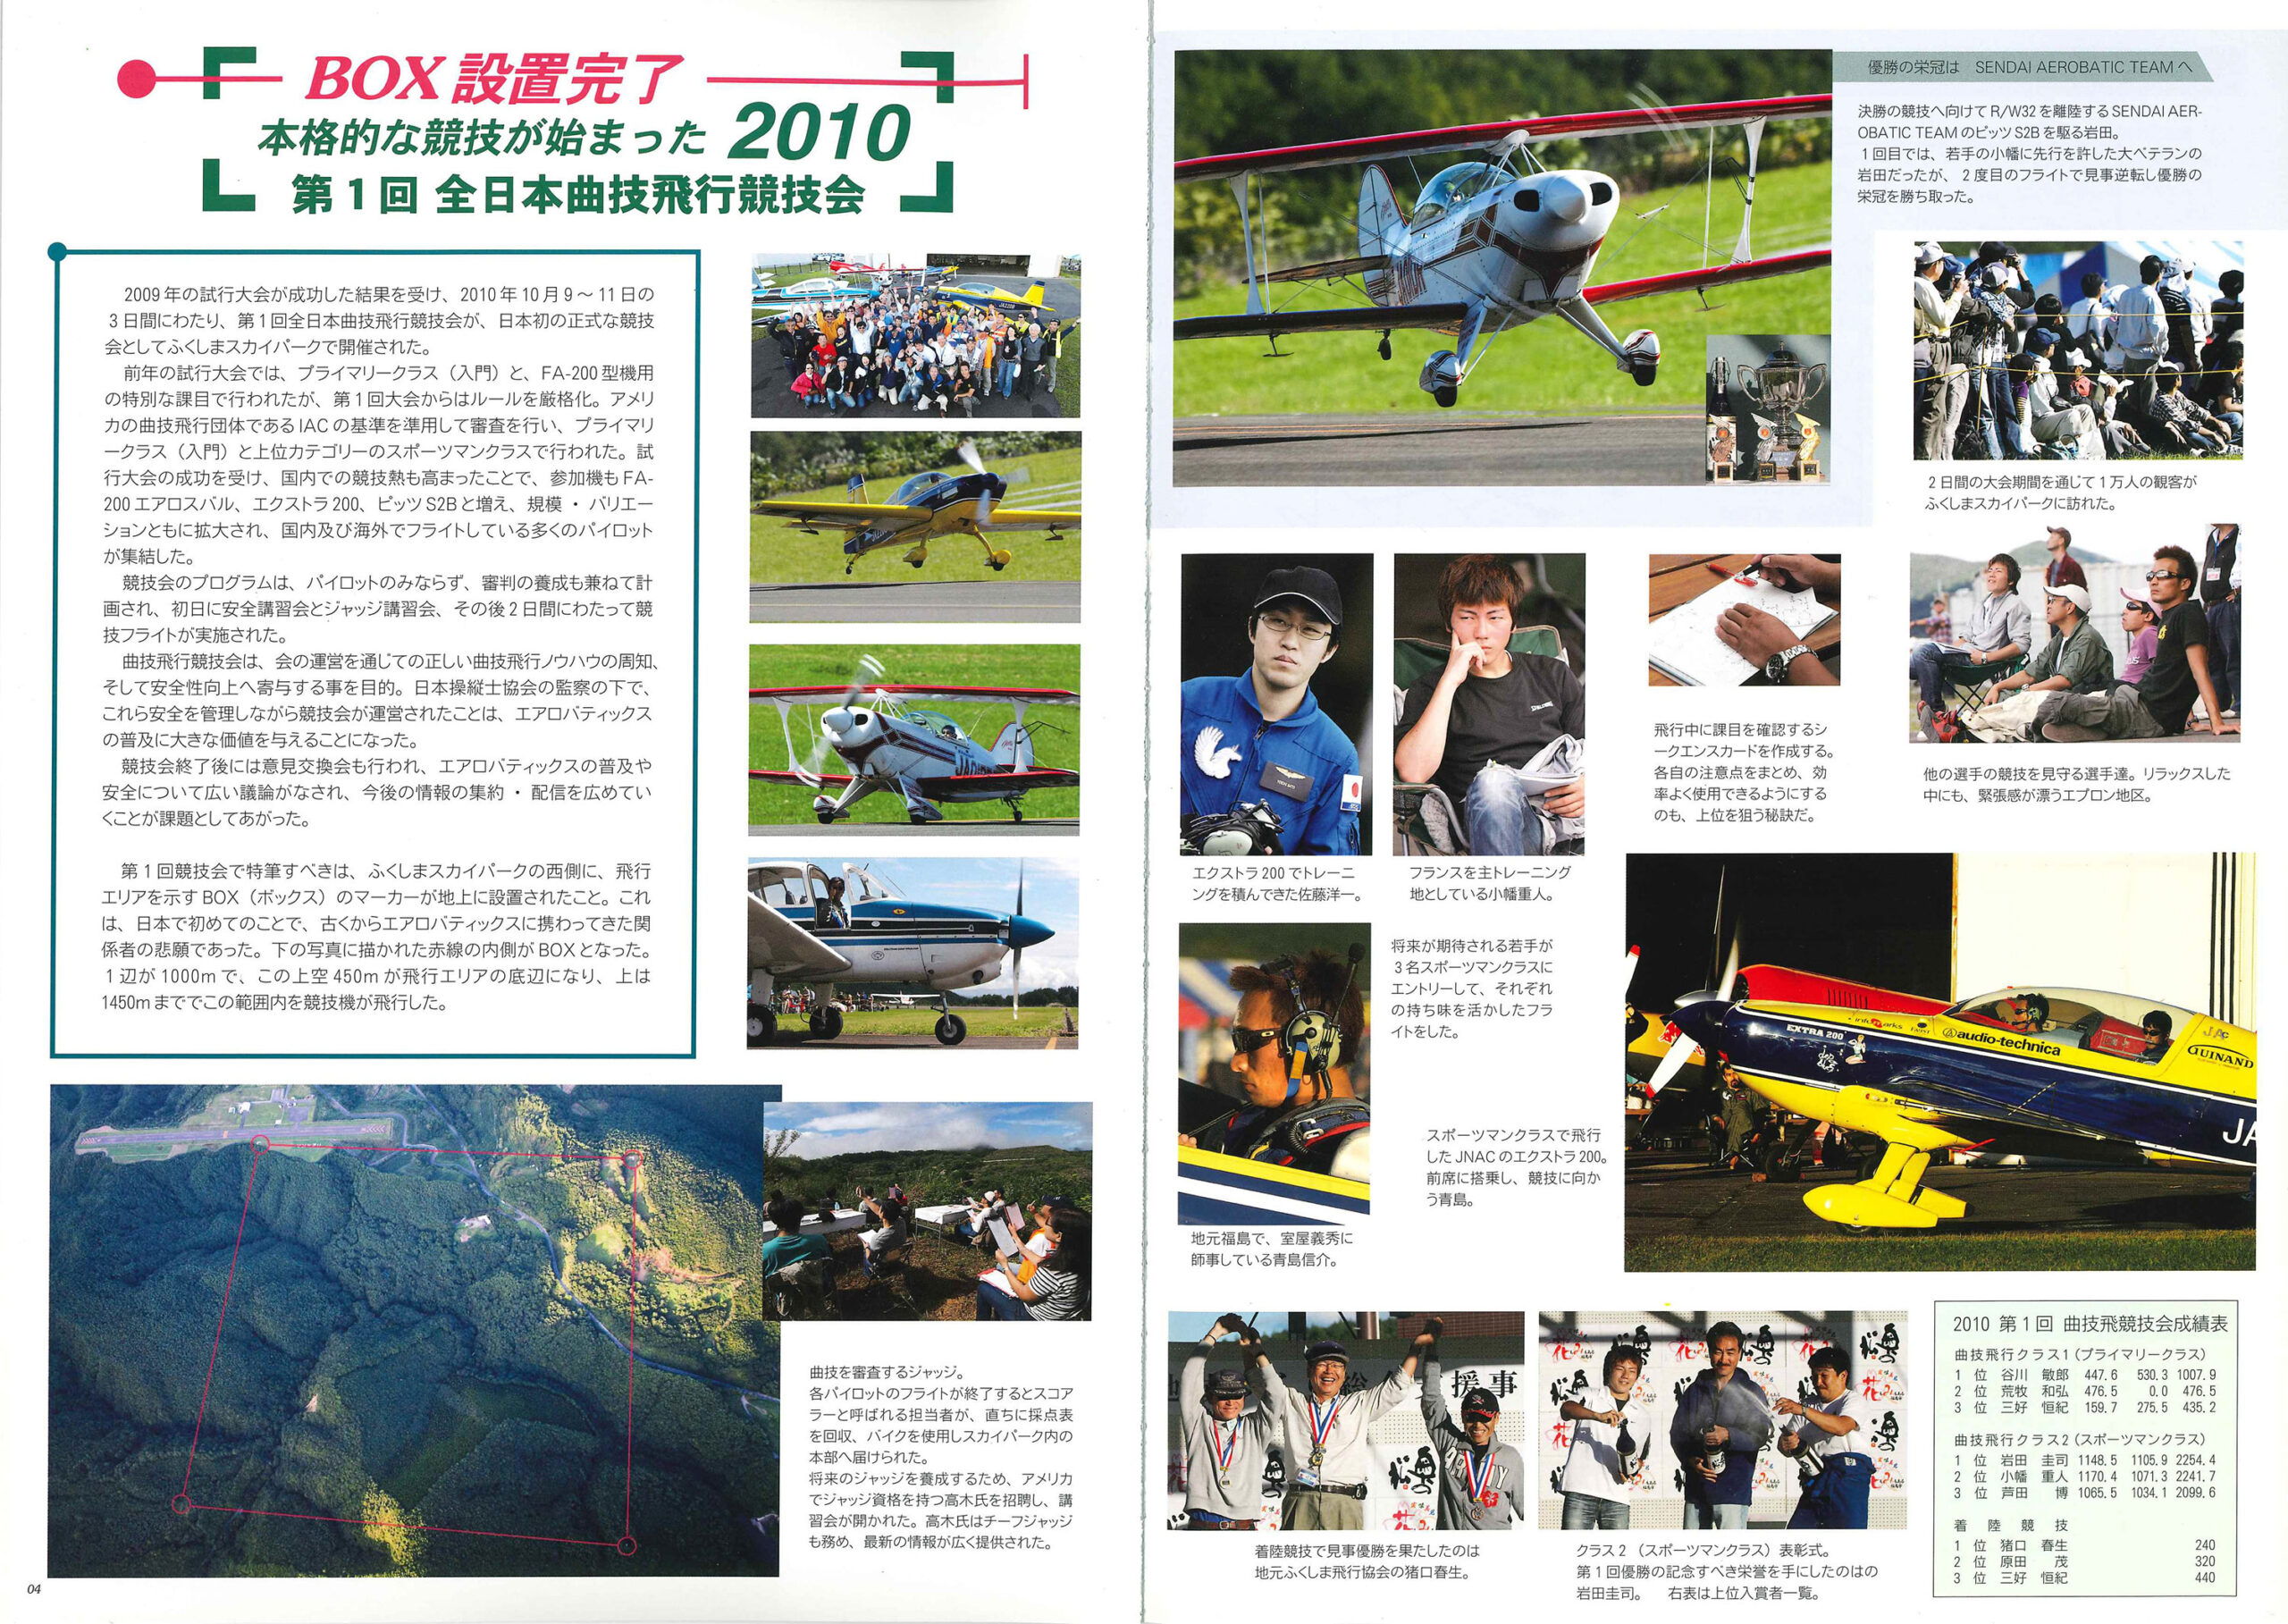 ※図７ 第１回全日本曲技飛行競技会を伝える記事（『エアロバティックス公式ガイドブック』2011年版より）